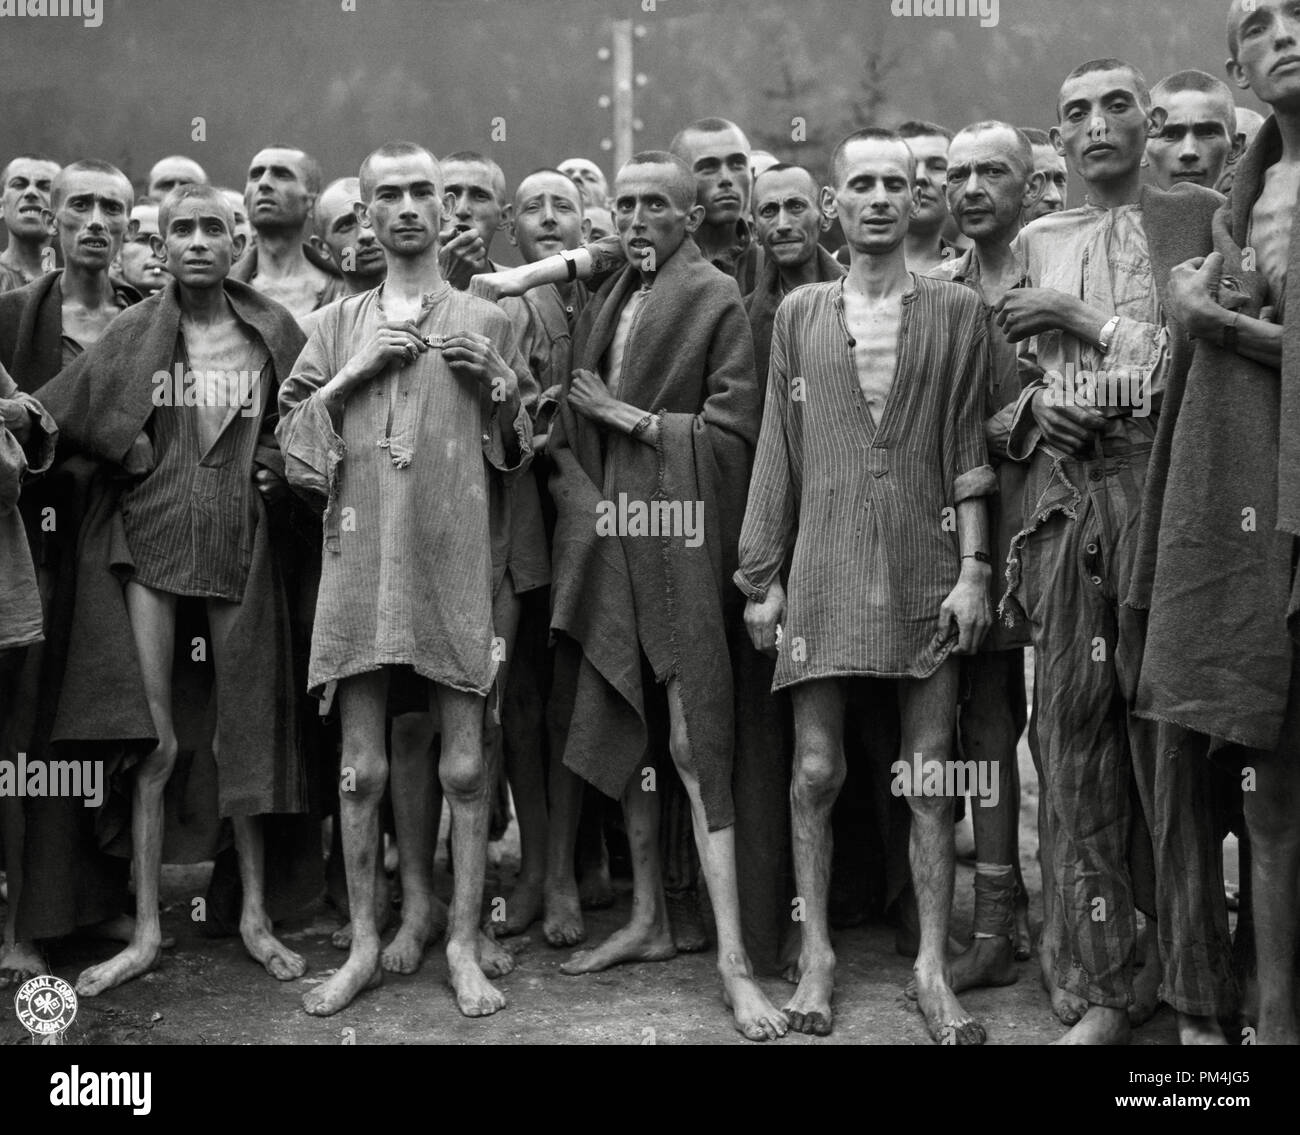 Ausgemergelten Überlebenden eines der größten NS-Konzentrationslager, in Ebensee, Österreich, 7. Mai 1945 Datei Referenz Nr. 1003 734 THA Stockfoto